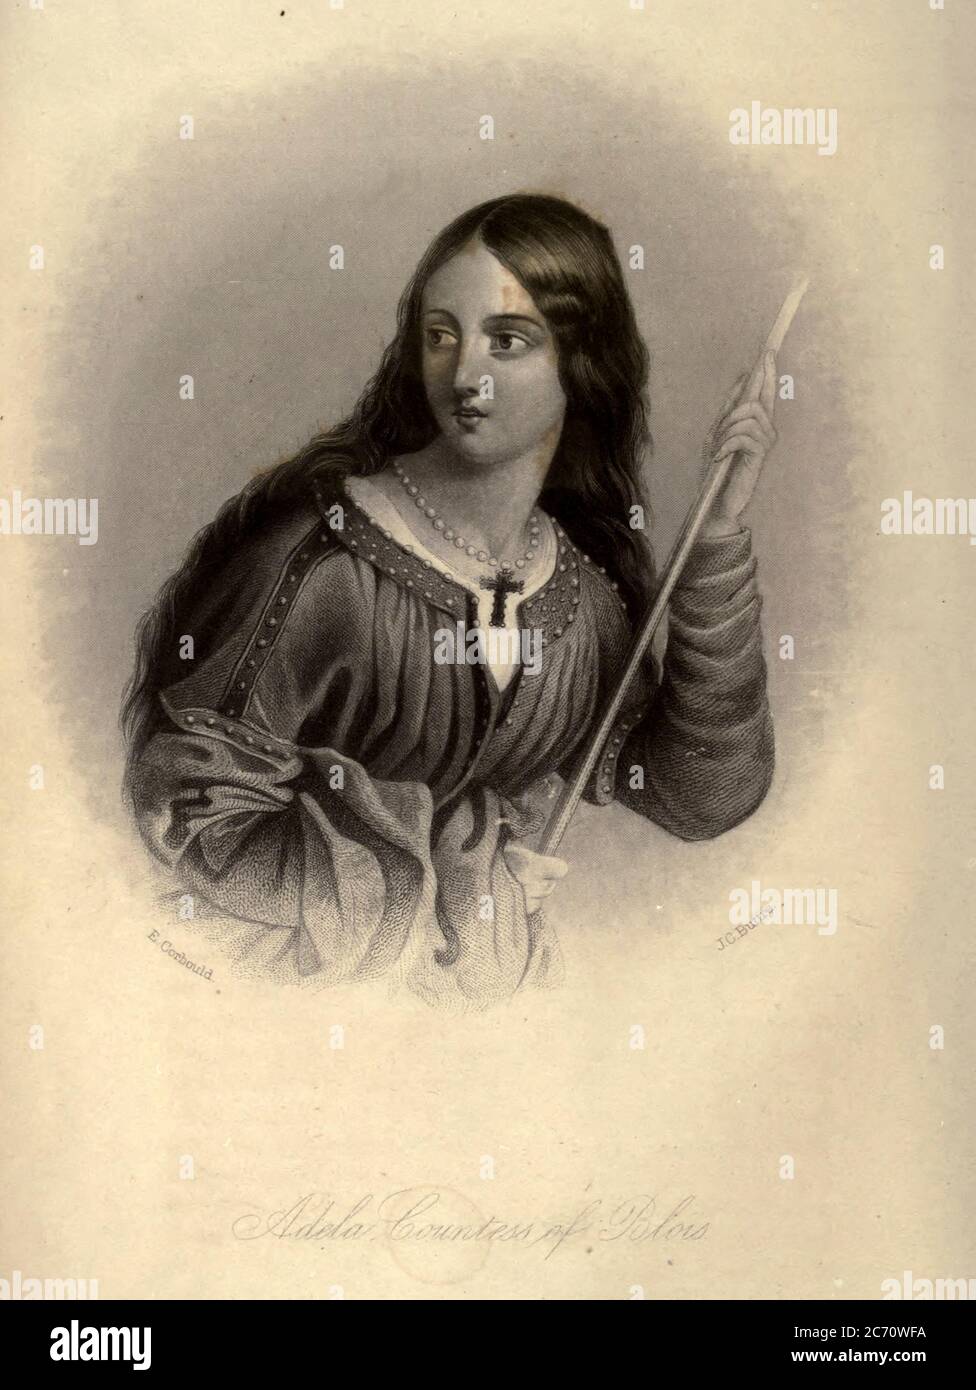 Adela di Normandia, di Blois, o di Inghilterra (c.. 1067 – 8 marzo 1137), nota anche come Santa Adela nel cattolicesimo romano, era figlia di Guglielmo il Conquistatore e Matilda delle Fiandre, che in seguito divenne contessa di Blois, Chartres e Meaux per matrimonio con Stefano II, Conte di Blois. Dal libro Heroines of the Crusades di Bloss, Celestea Angenette, 1812-1855 pubblicato da Auburn Alden, Beardsley, New York, 1853 inciso da J.C. Pulsante Foto Stock